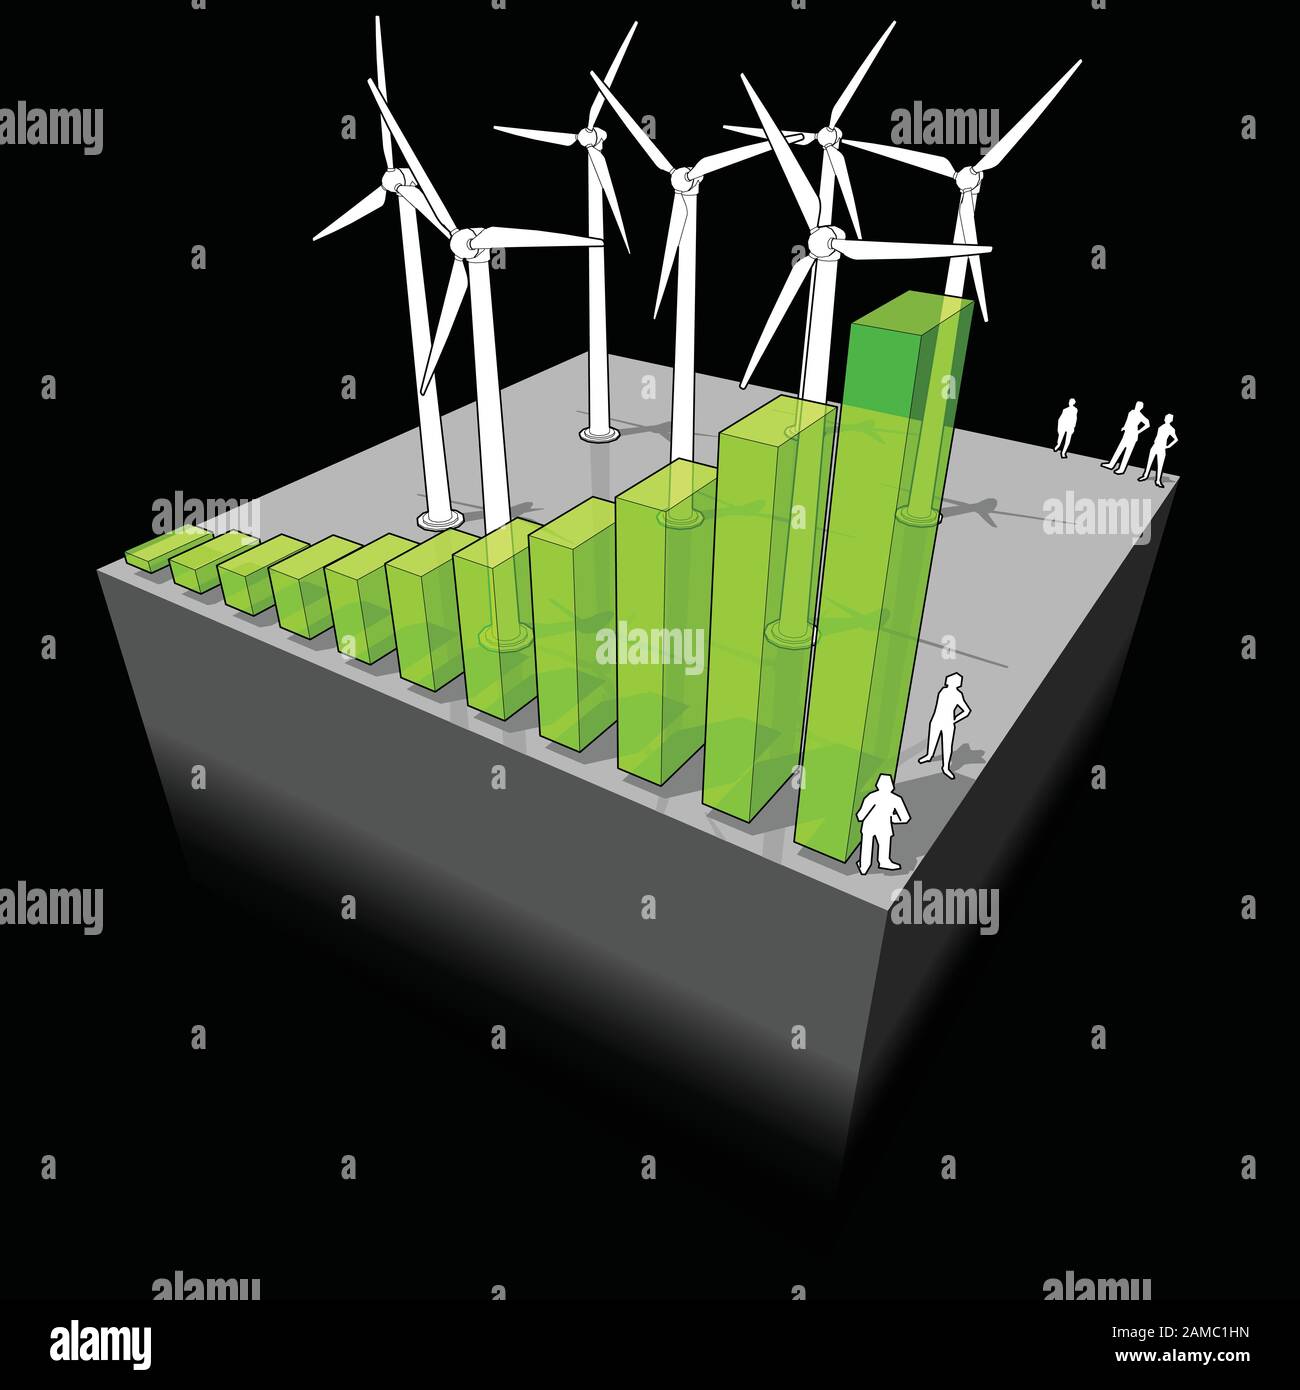 Diagramme d'une exploitation d'éoliennes avec diagramme à barres en hausse signifiant l'importance croissante ou le boom de l'industrie de l'énergie éolienne Illustration de Vecteur